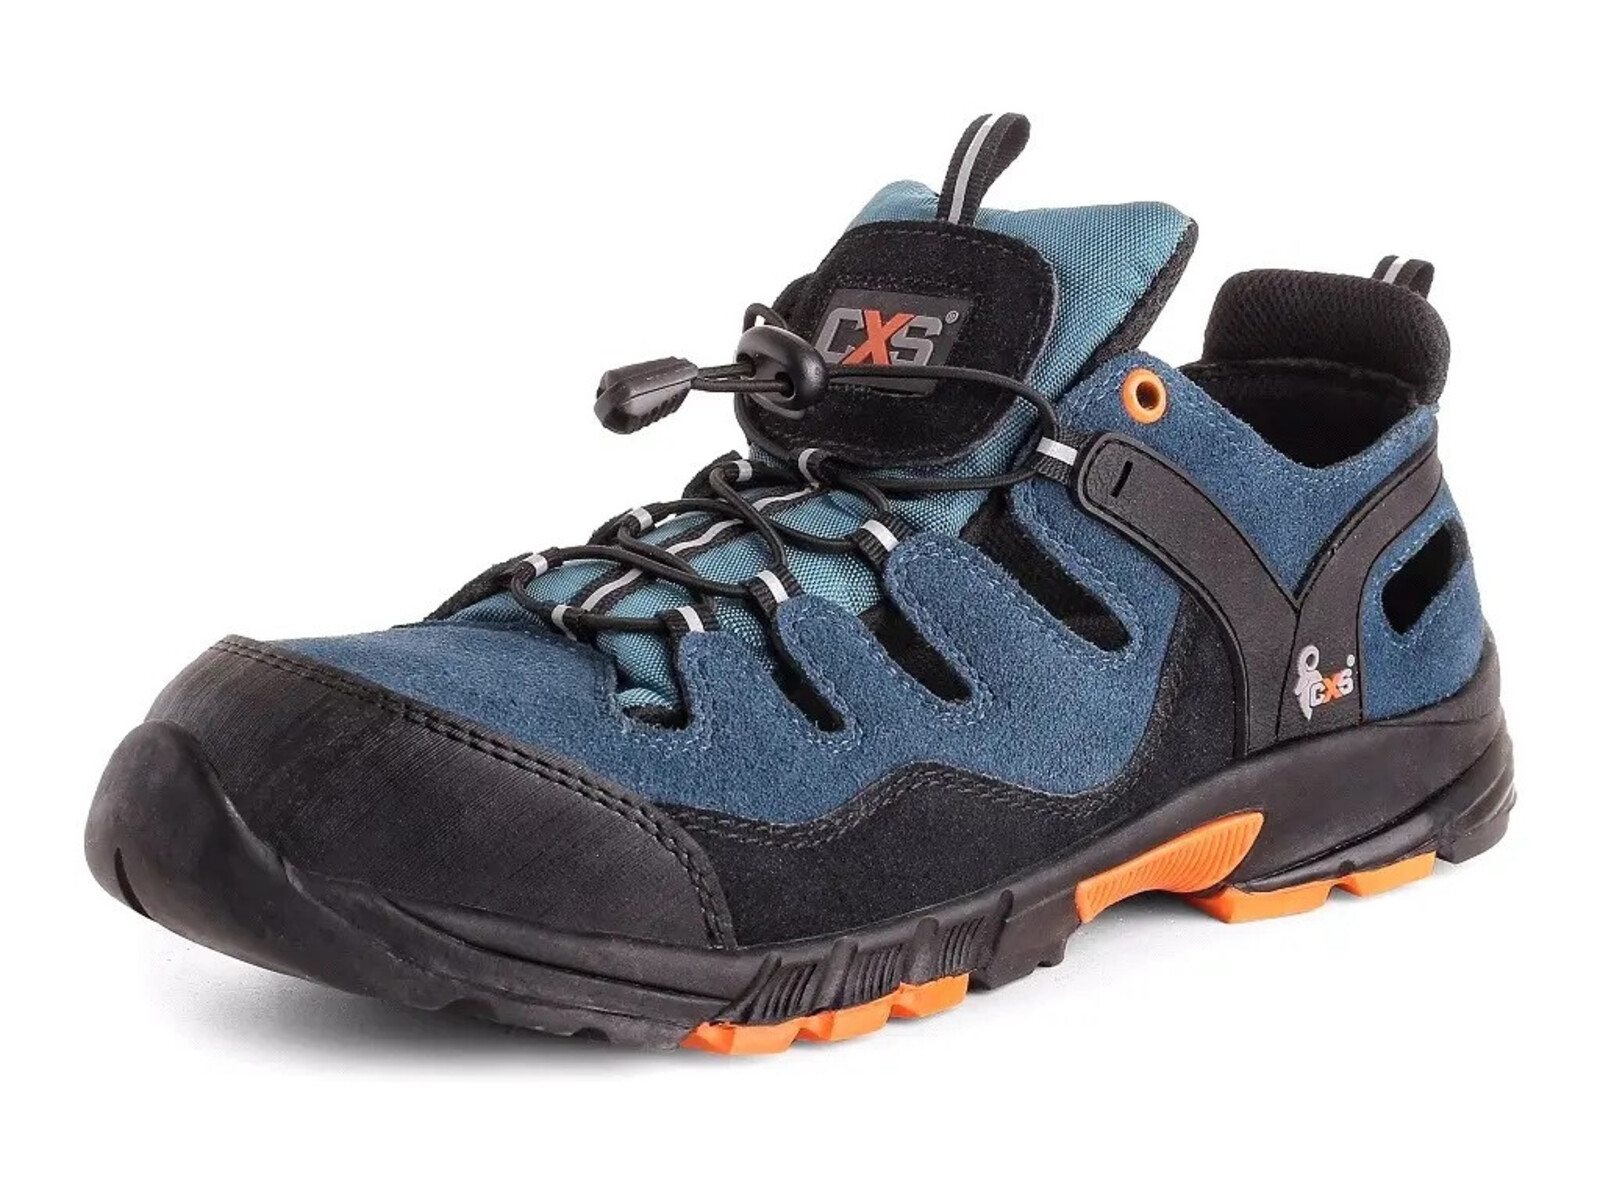 Bezpečnostné sandále CXS Land Cabrera S1 SRC - veľkosť: 38, farba: modrá/oranžová